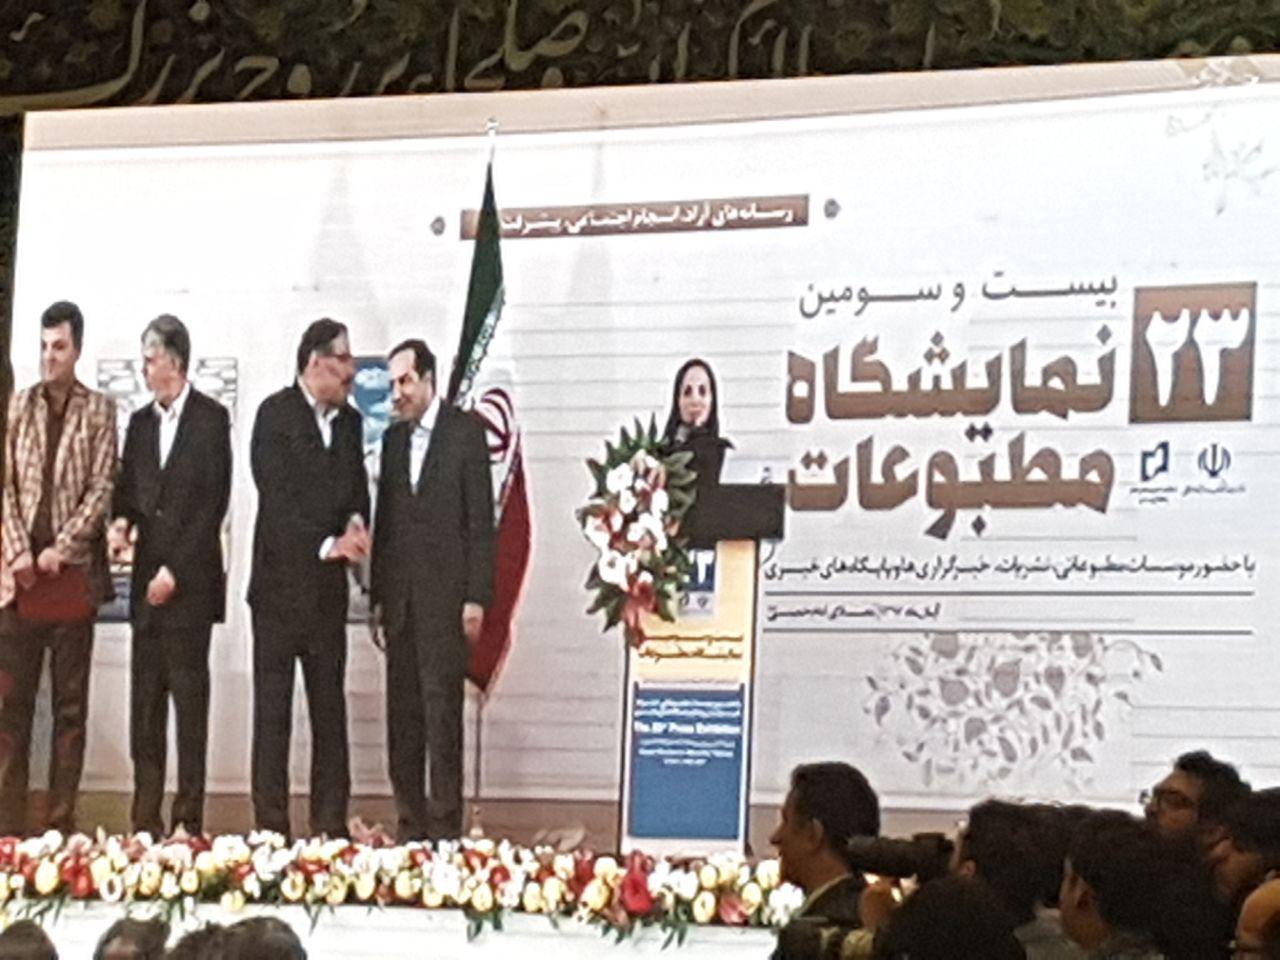 Tehran Press Exhibition ends